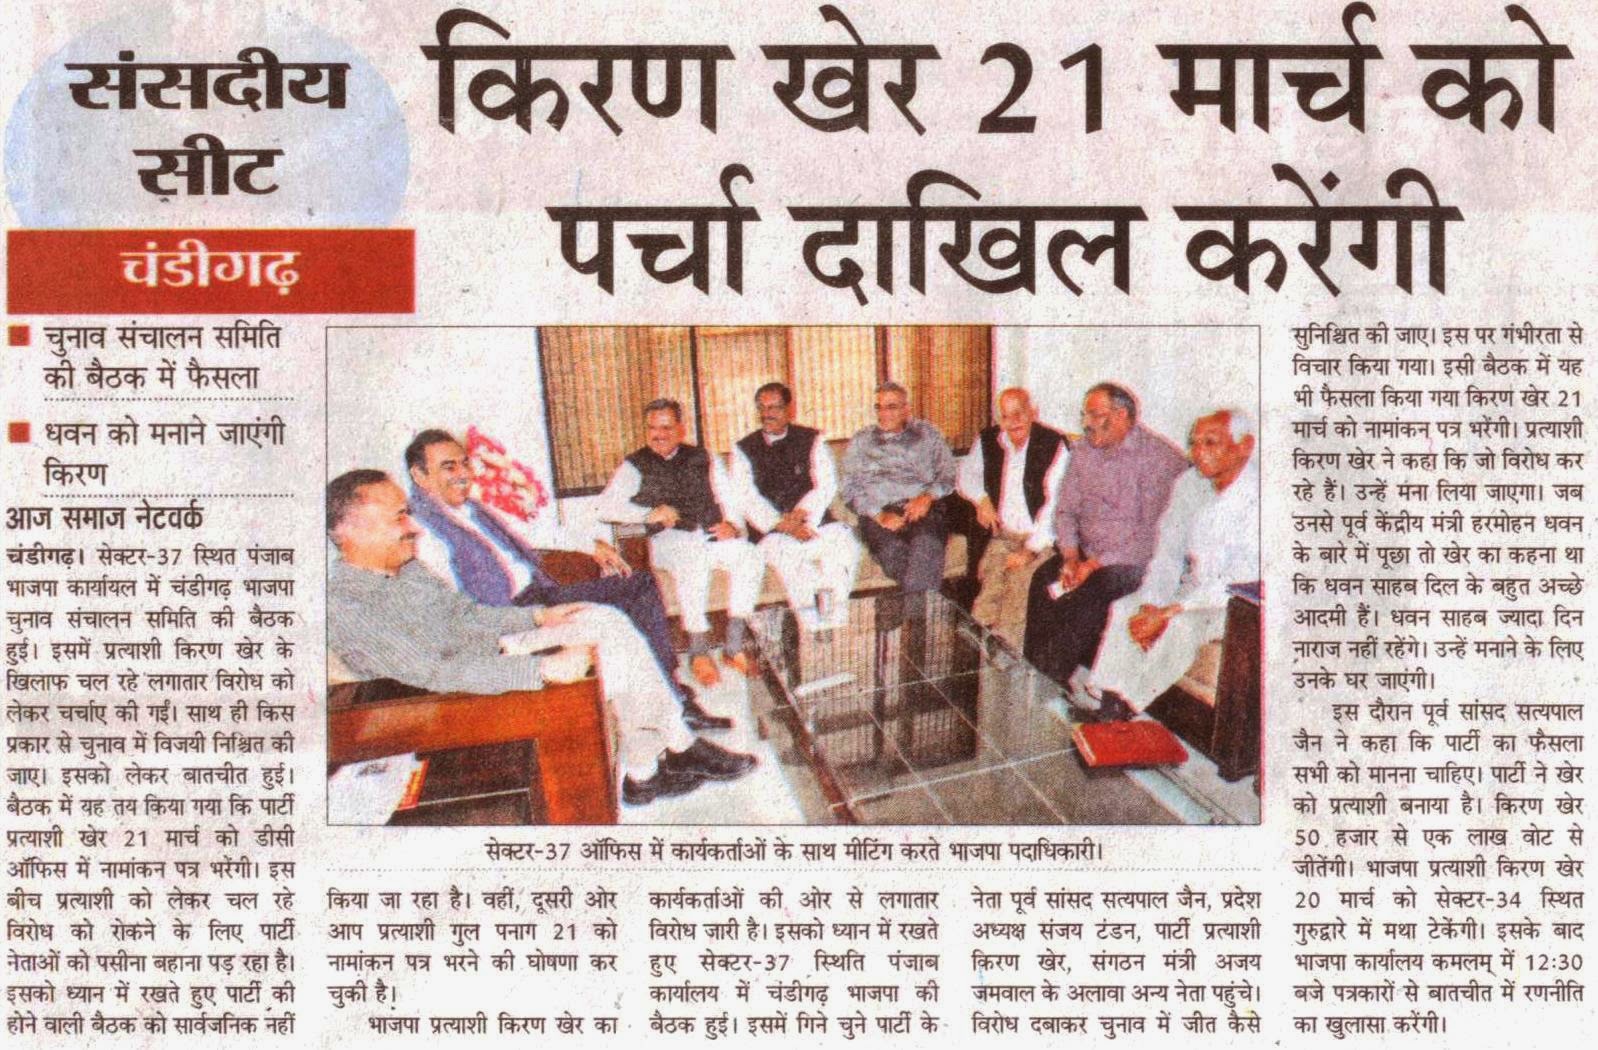 सेक्टर 37 ऑफिस में कार्यकर्ताओं के साथ मीटिंग करते भाजपा के वरिष्ठ नेता सत्य पाल जैन व अन्य